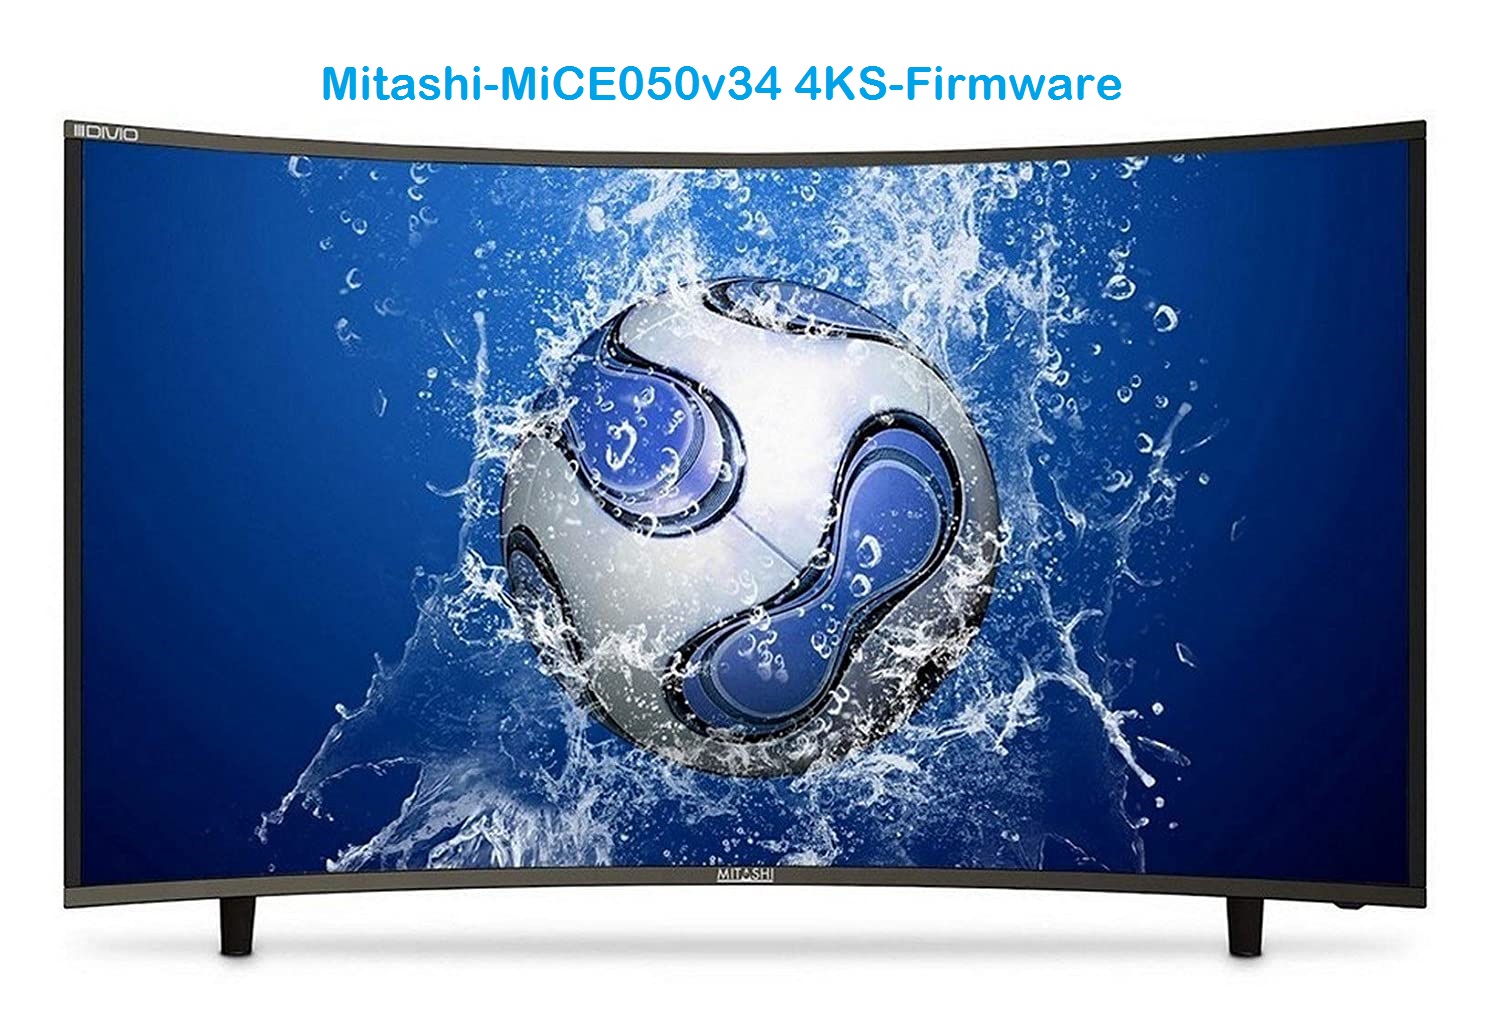 Mitashi Mice050V34 4Ks_Firmware